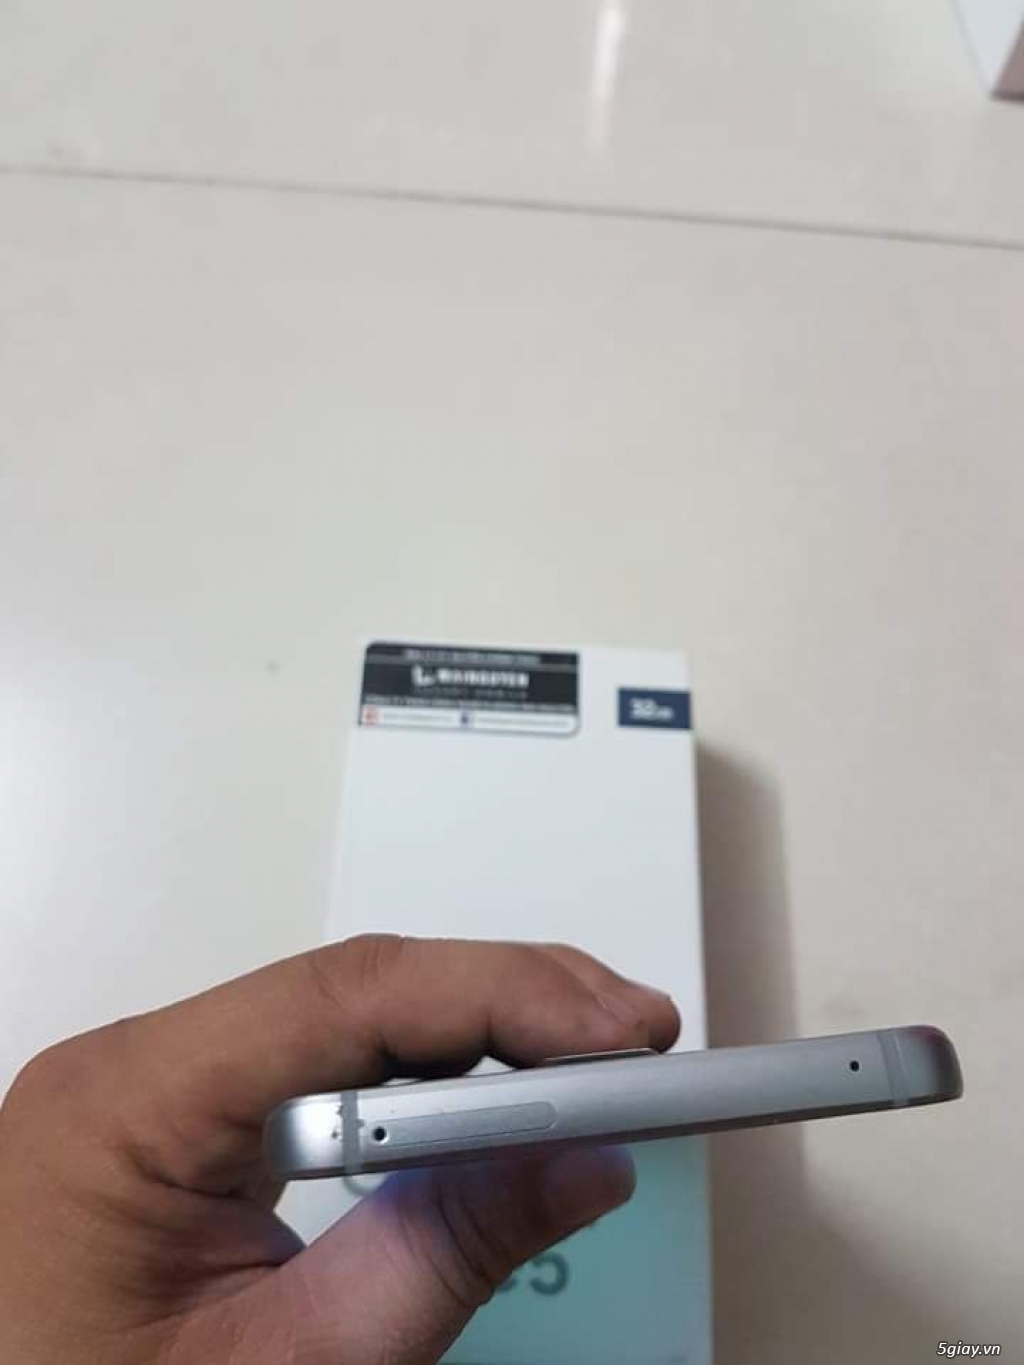 Note 5 xanh đen, chính hãng Samsung Việt Nam, full box - 2